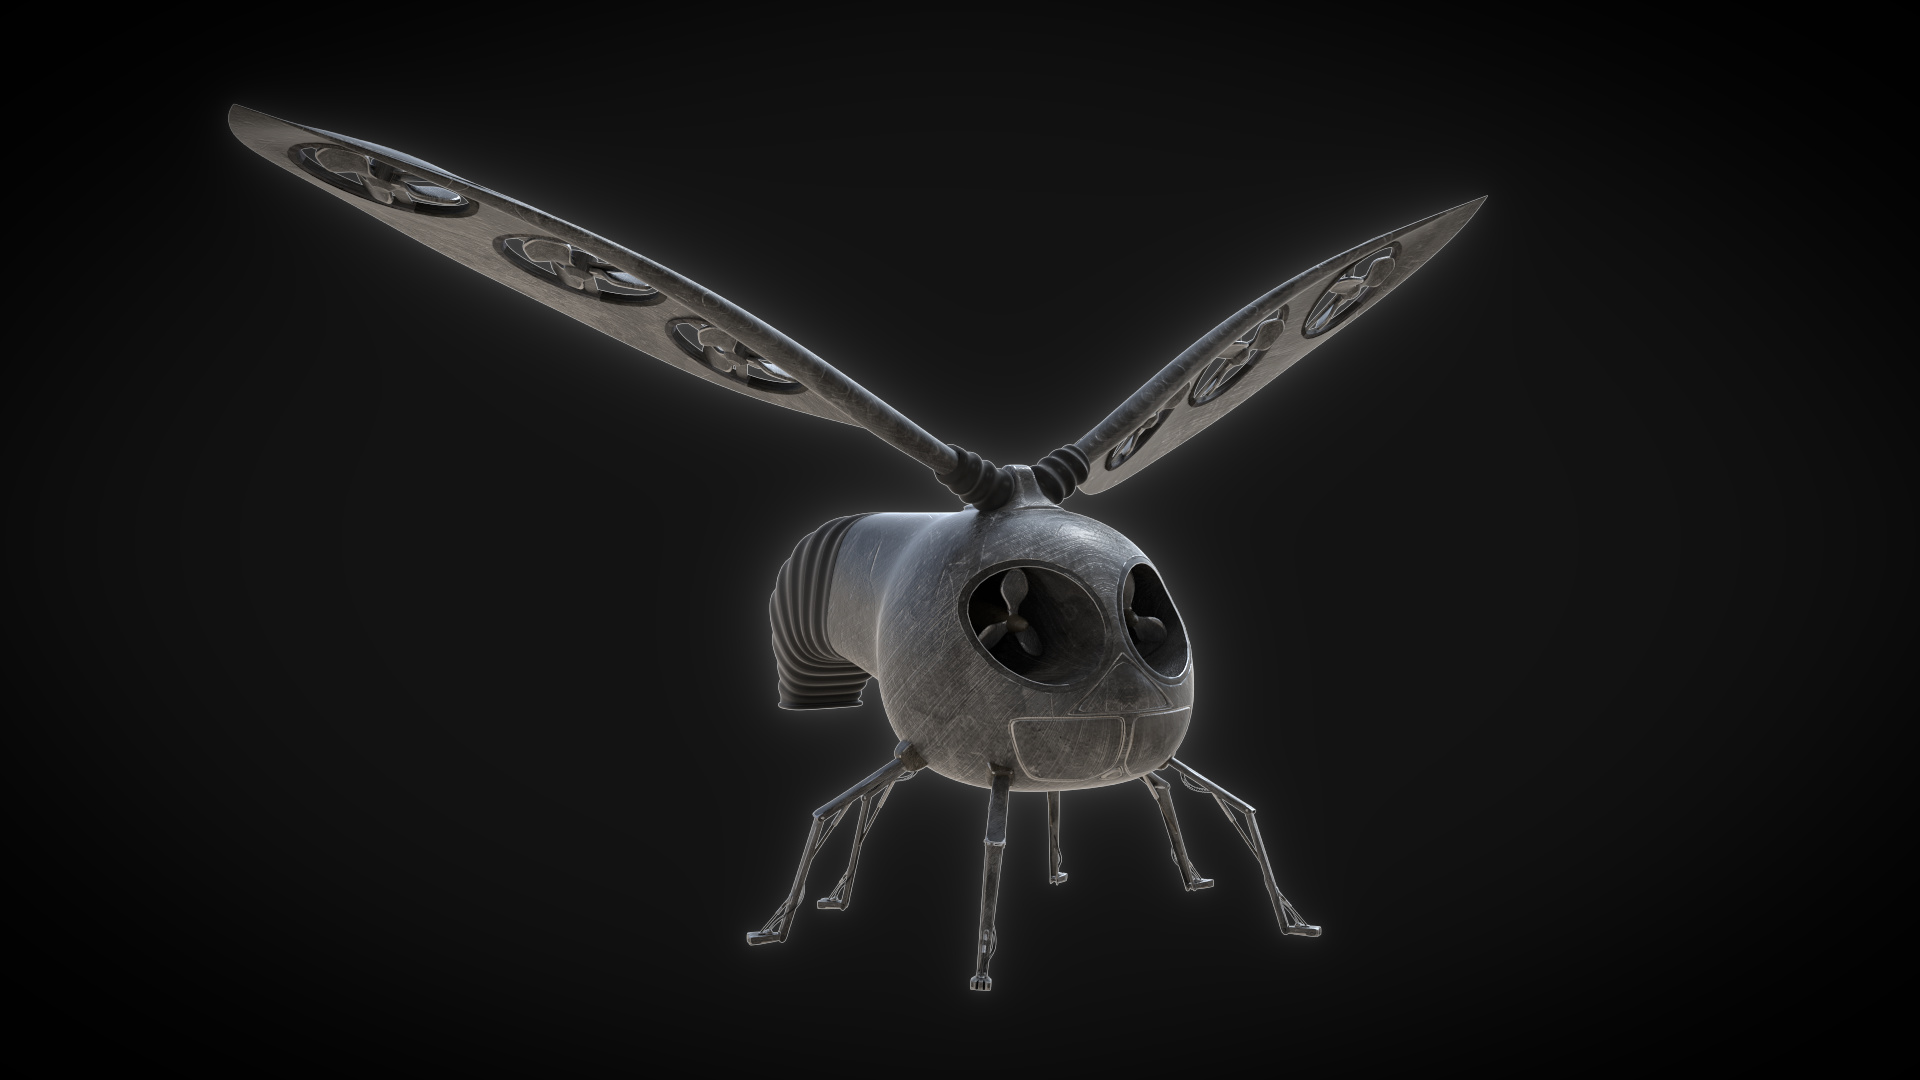 Flying robots. Робот "пчела". Lexx робот. Космические роботы робот-пчела. Robot Fly Art.